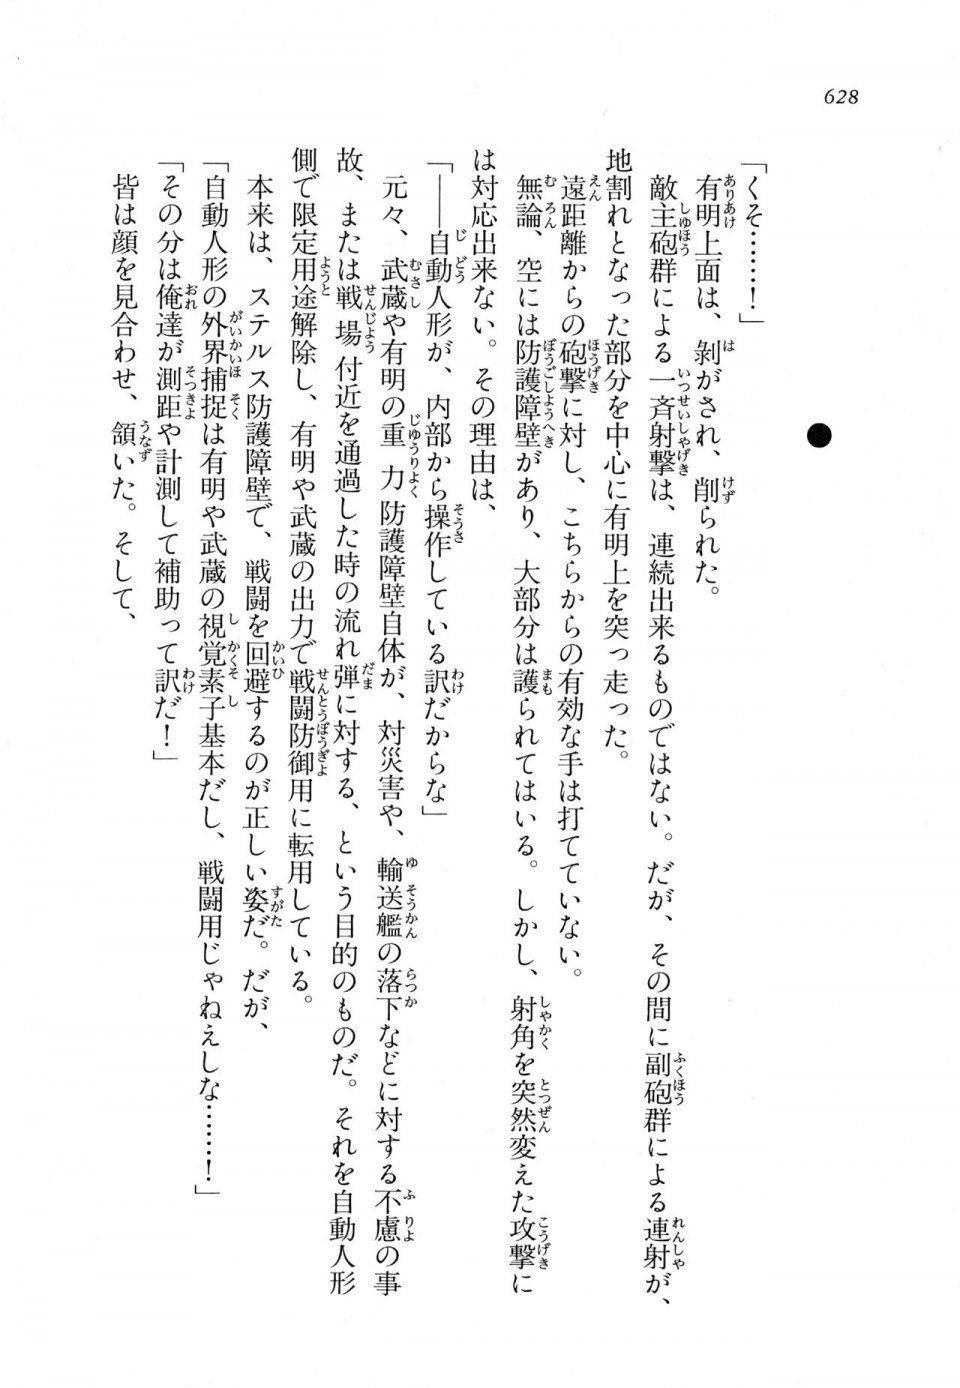 Kyoukai Senjou no Horizon LN Vol 11(5A) - Photo #628